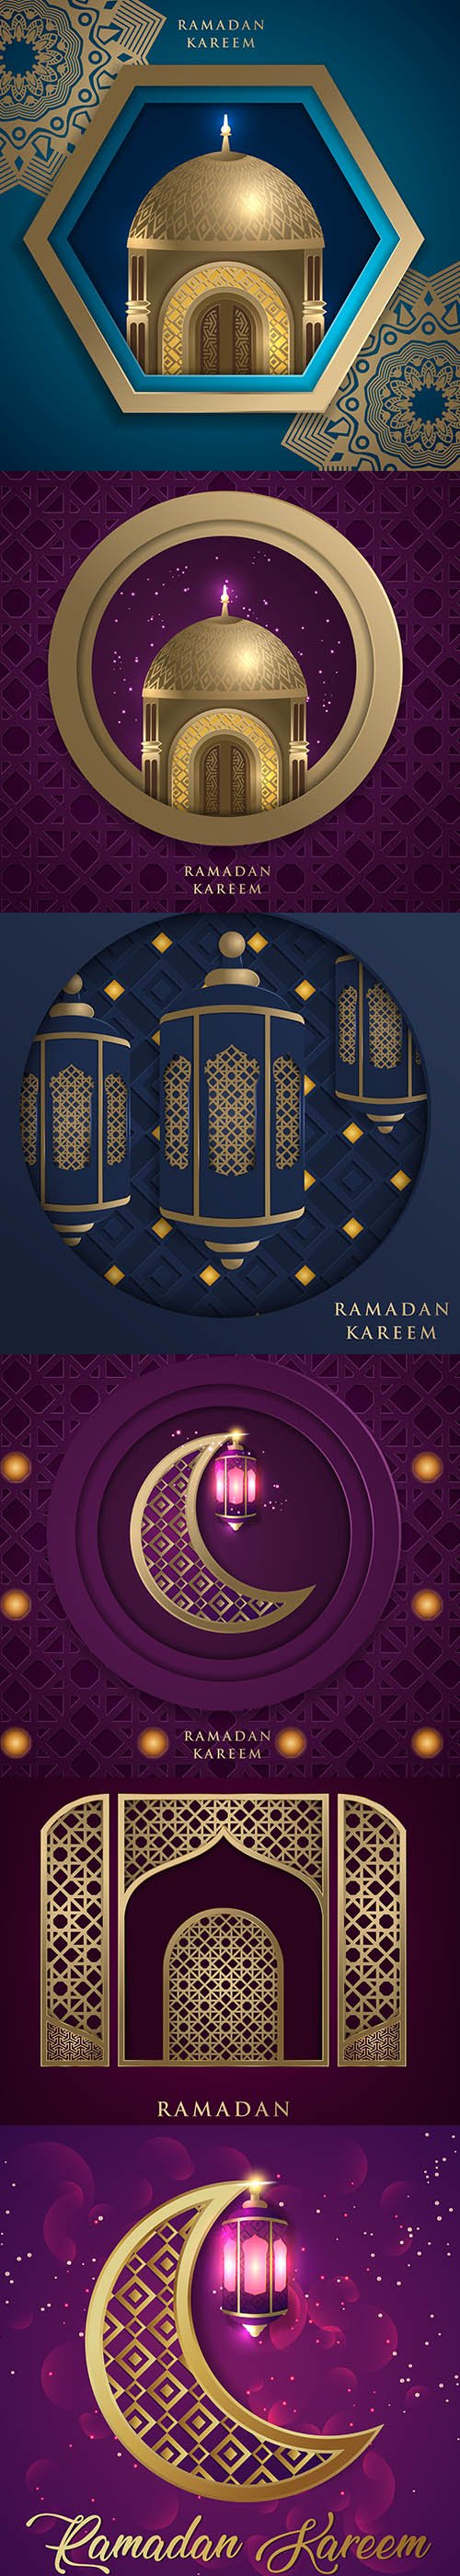 Ramadan Kareem Greeting Banner Backgrounds Set